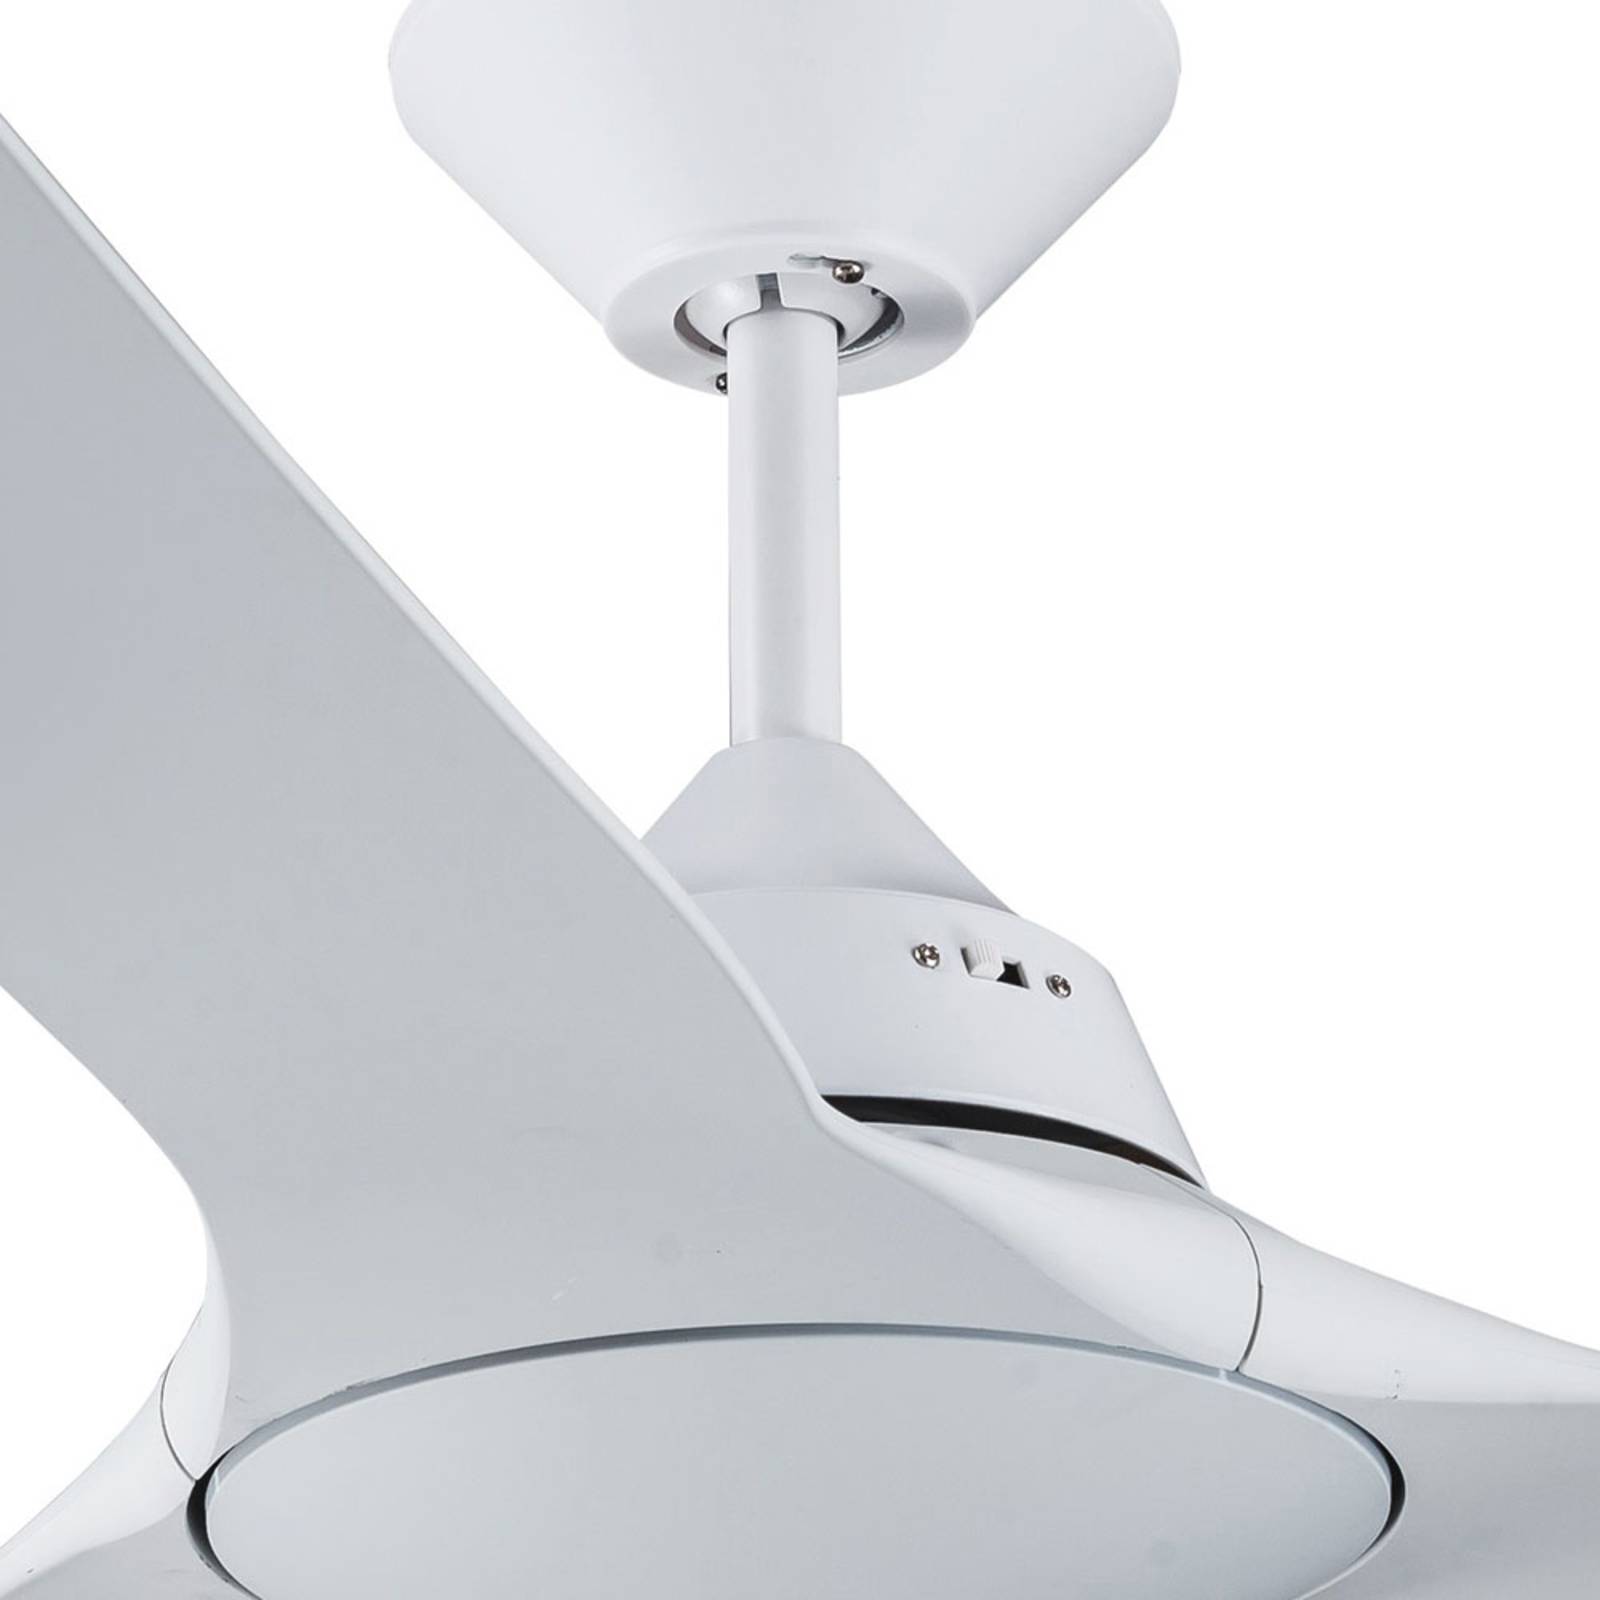 Image of Beacon Lighting Ventilateur de plafond Mariner blanc sans lumière 9333509136743